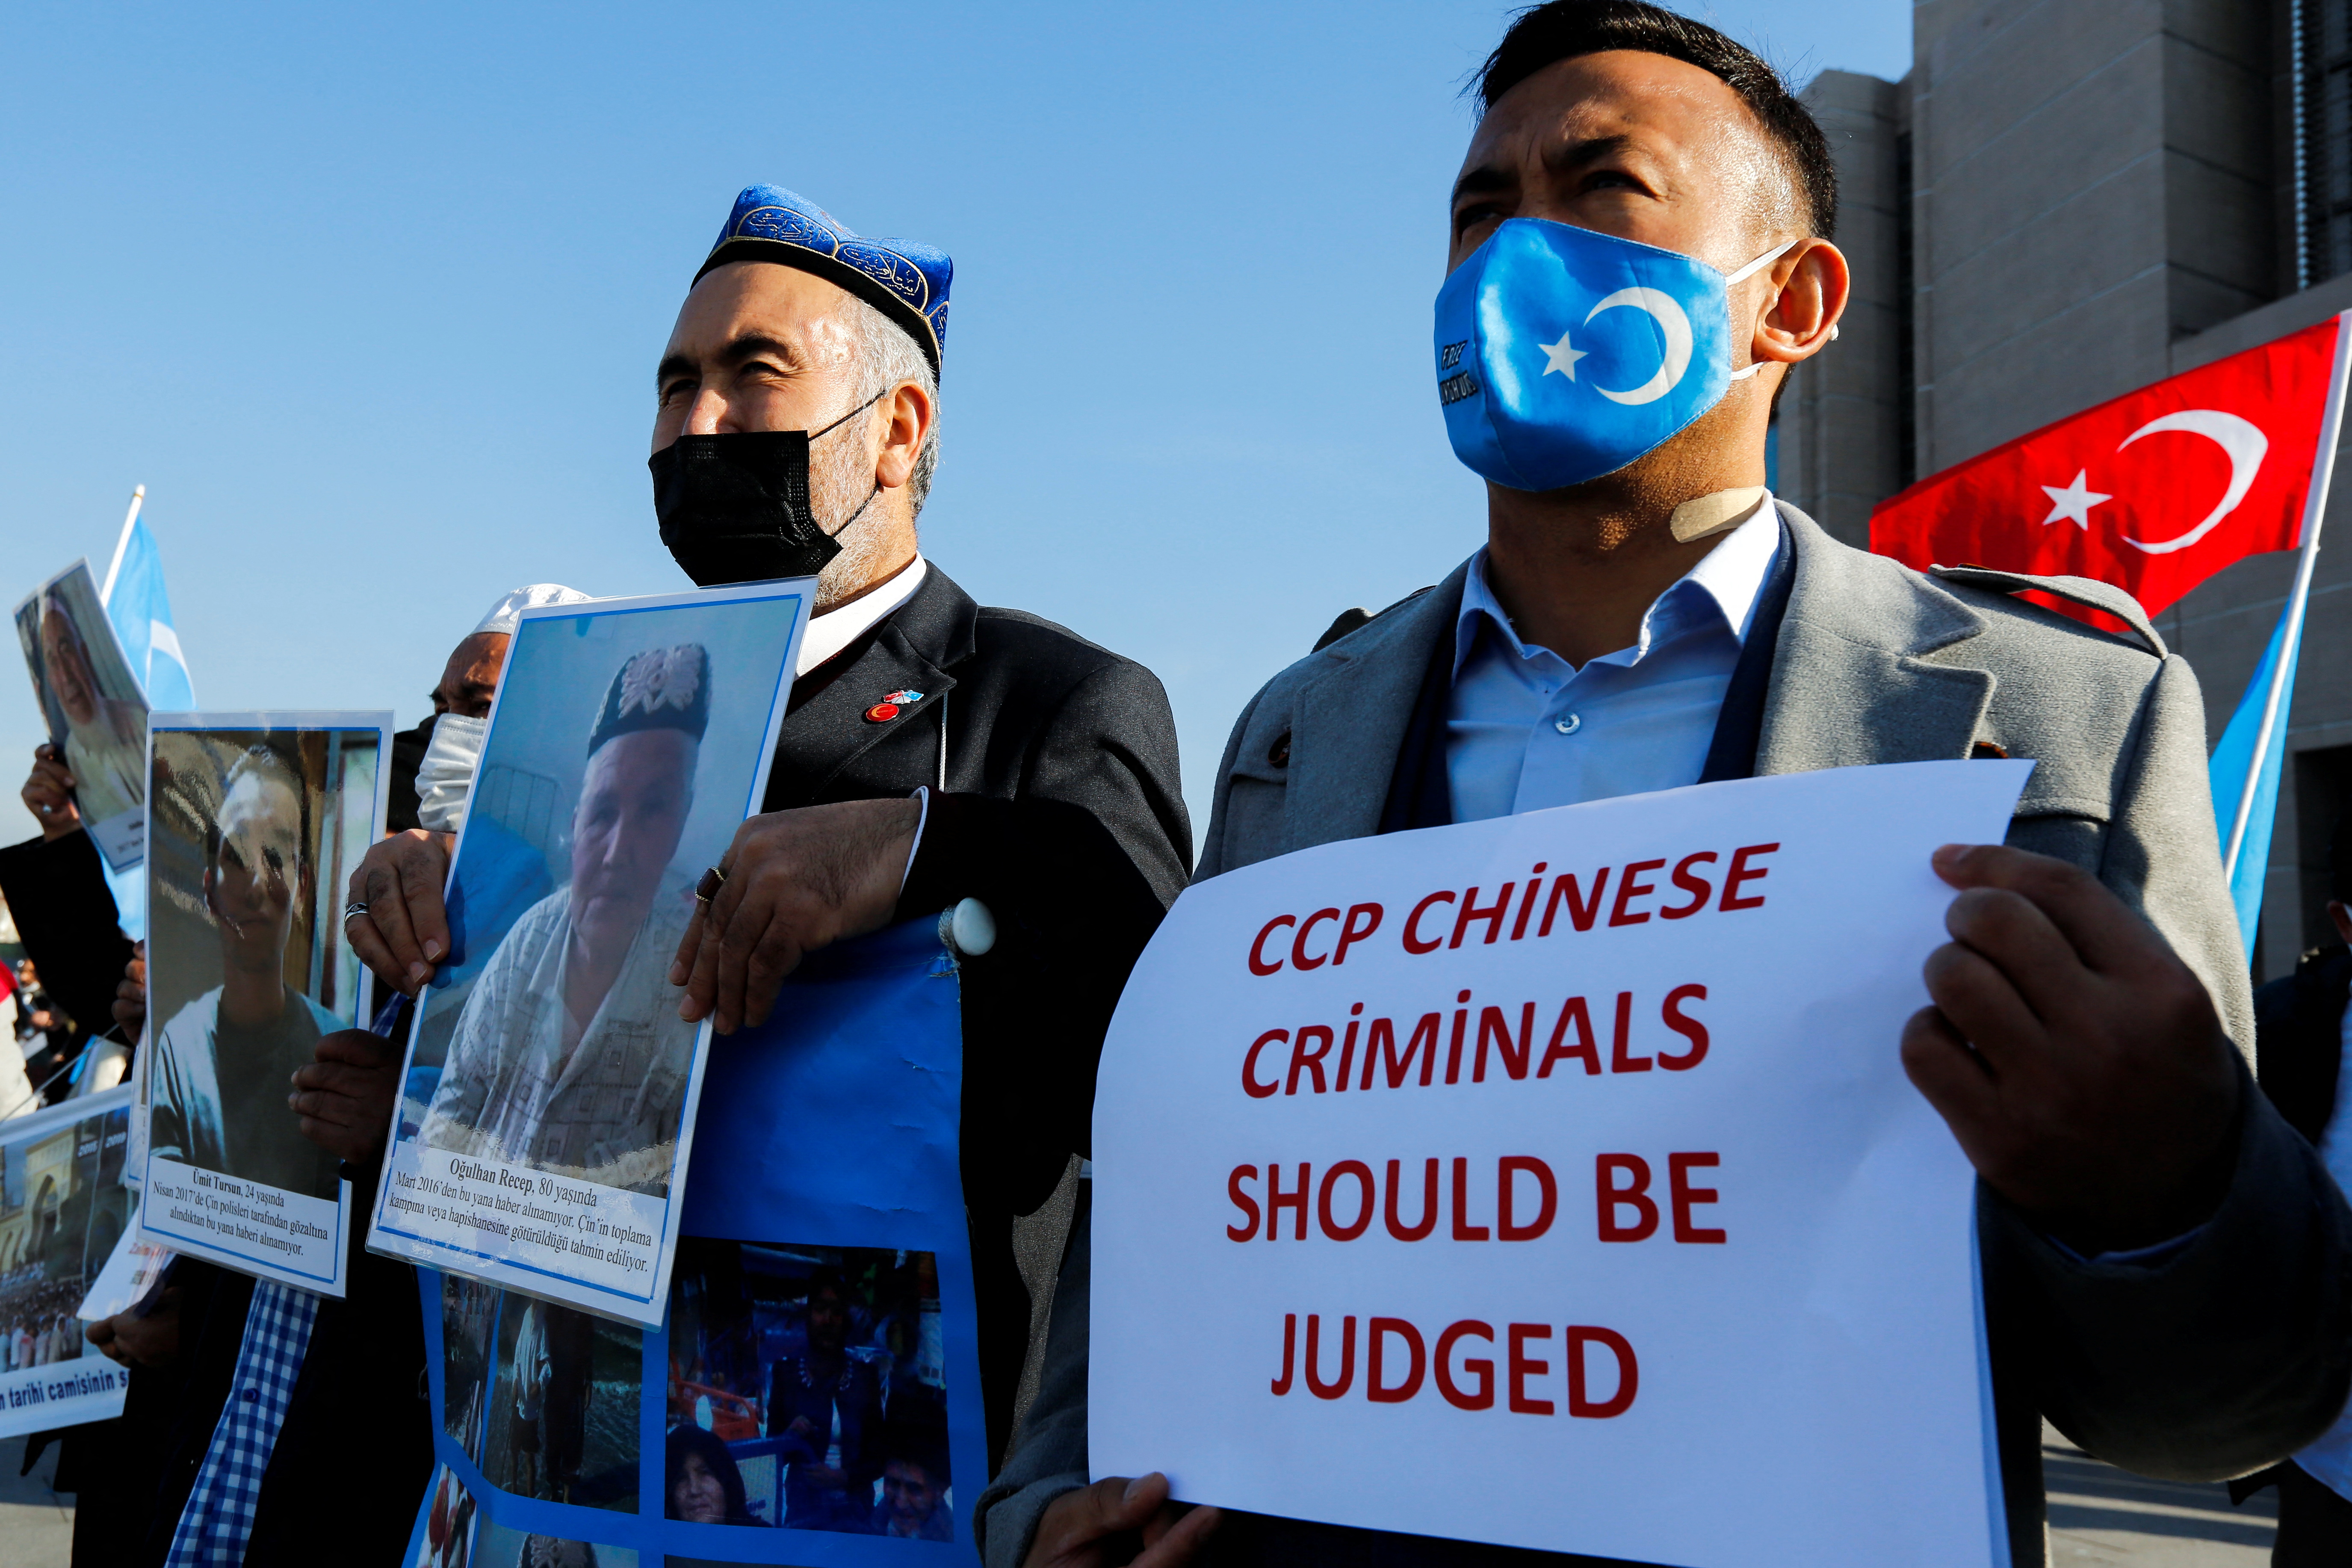 Las manifestaciones que denuncian la persecución de los uigures en China se suceden en diversos países, como esta en Turquía en enero de 2022 (REUTERS/Dilara Senkaya)